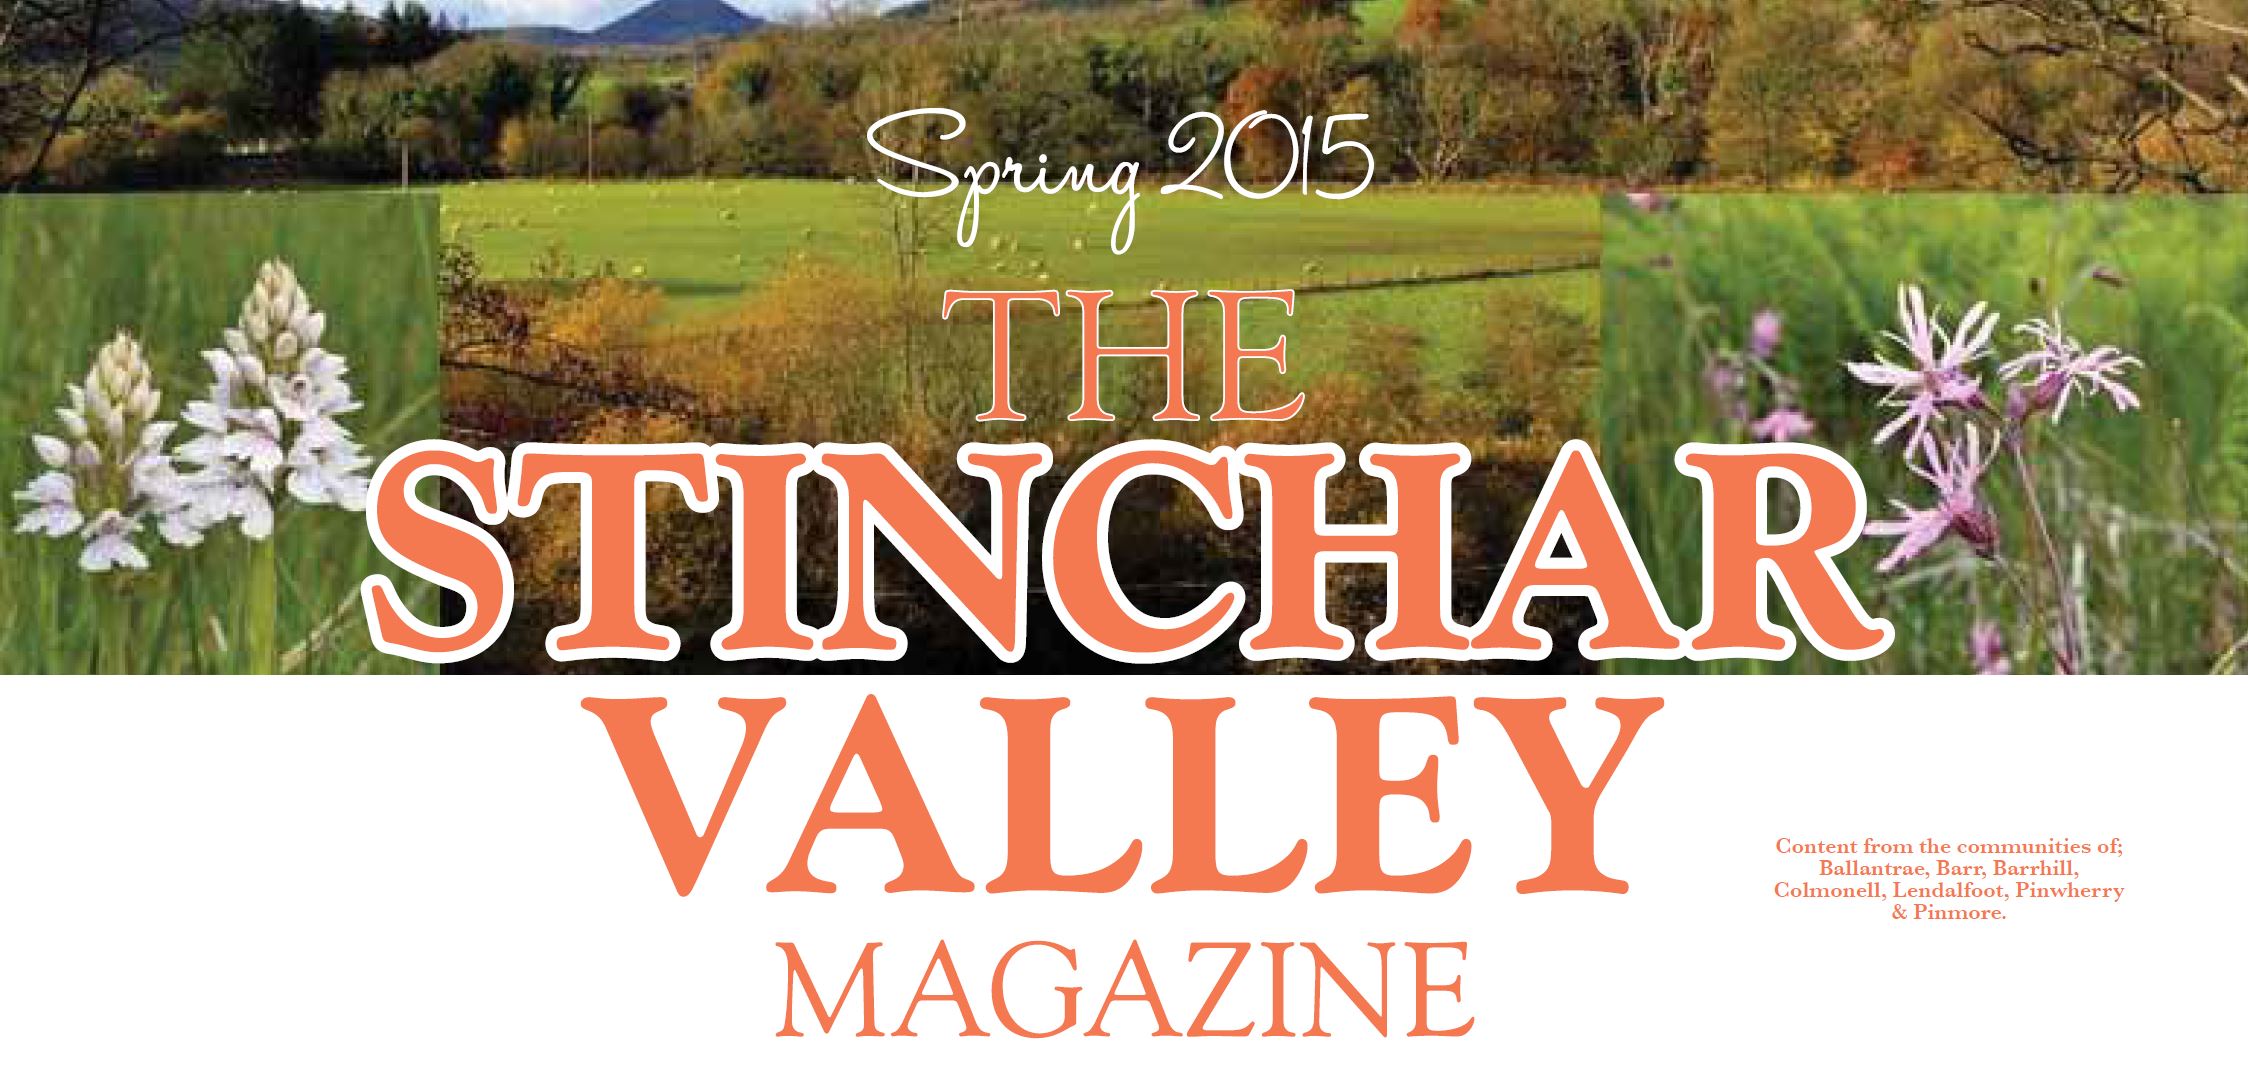 Stinchar Valley Magazine – Spring 2015